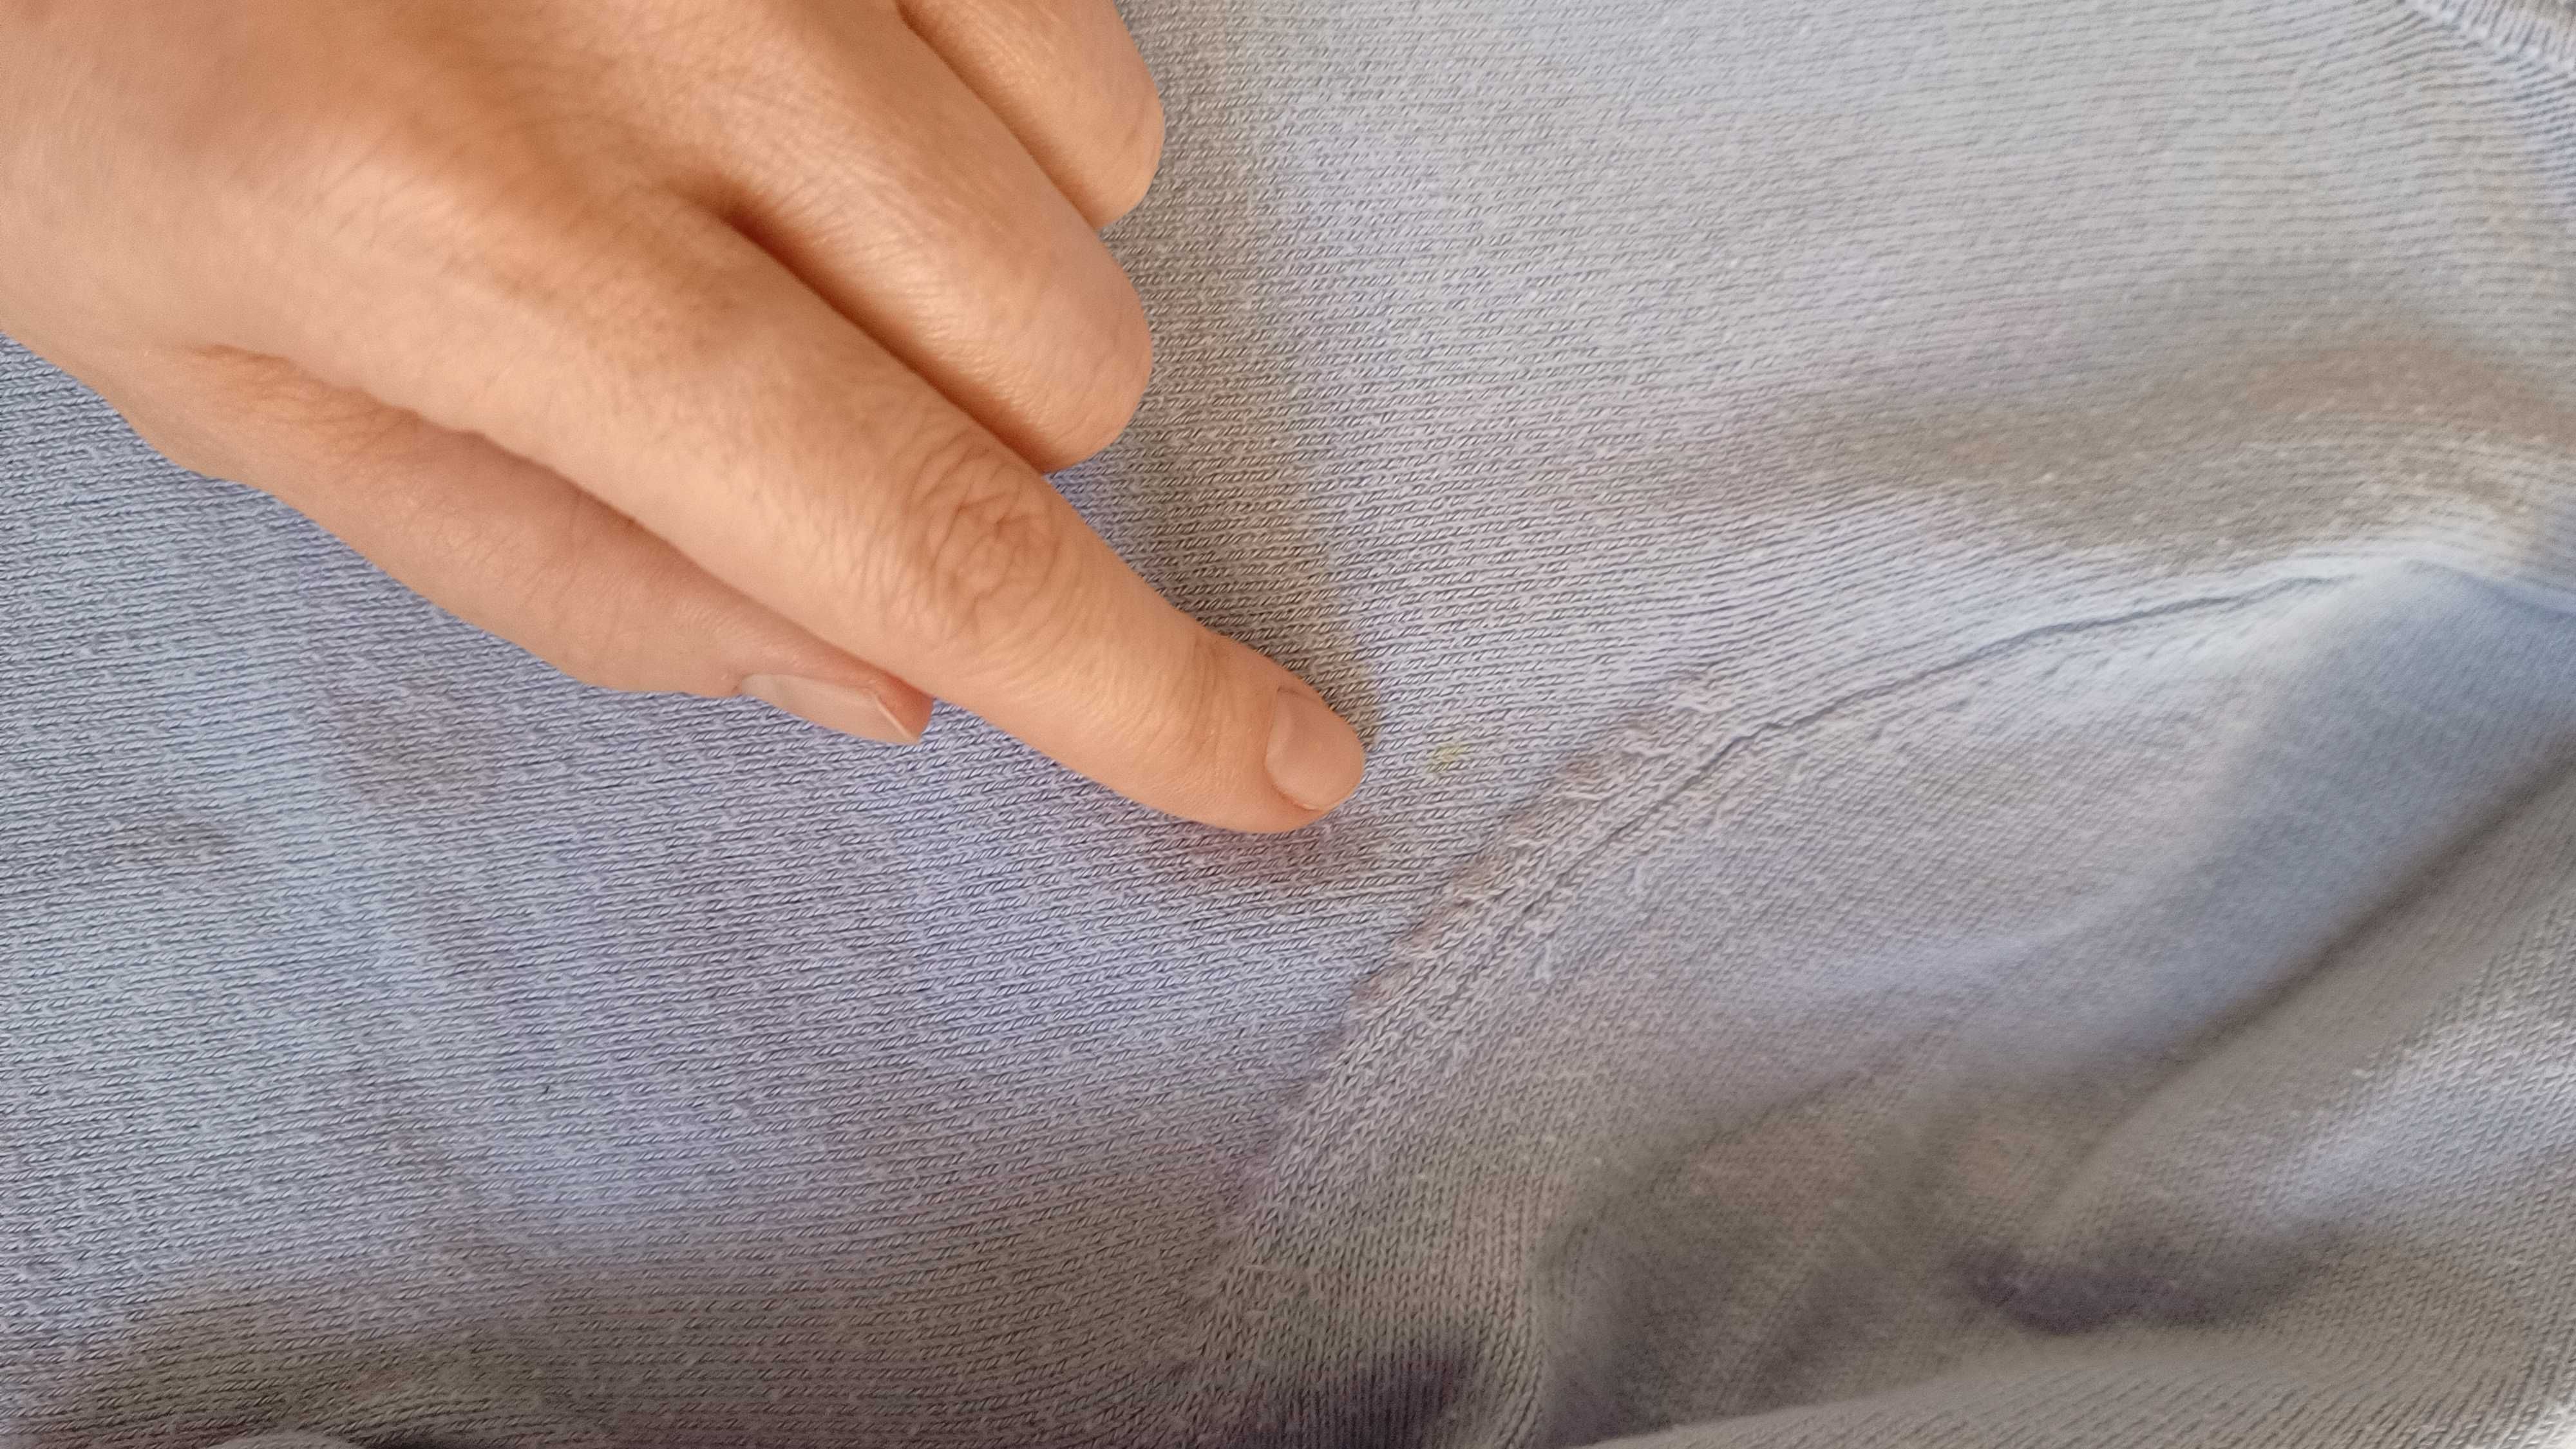 Sweter z krótkim rękawem na lato - piękny odcień błękitu